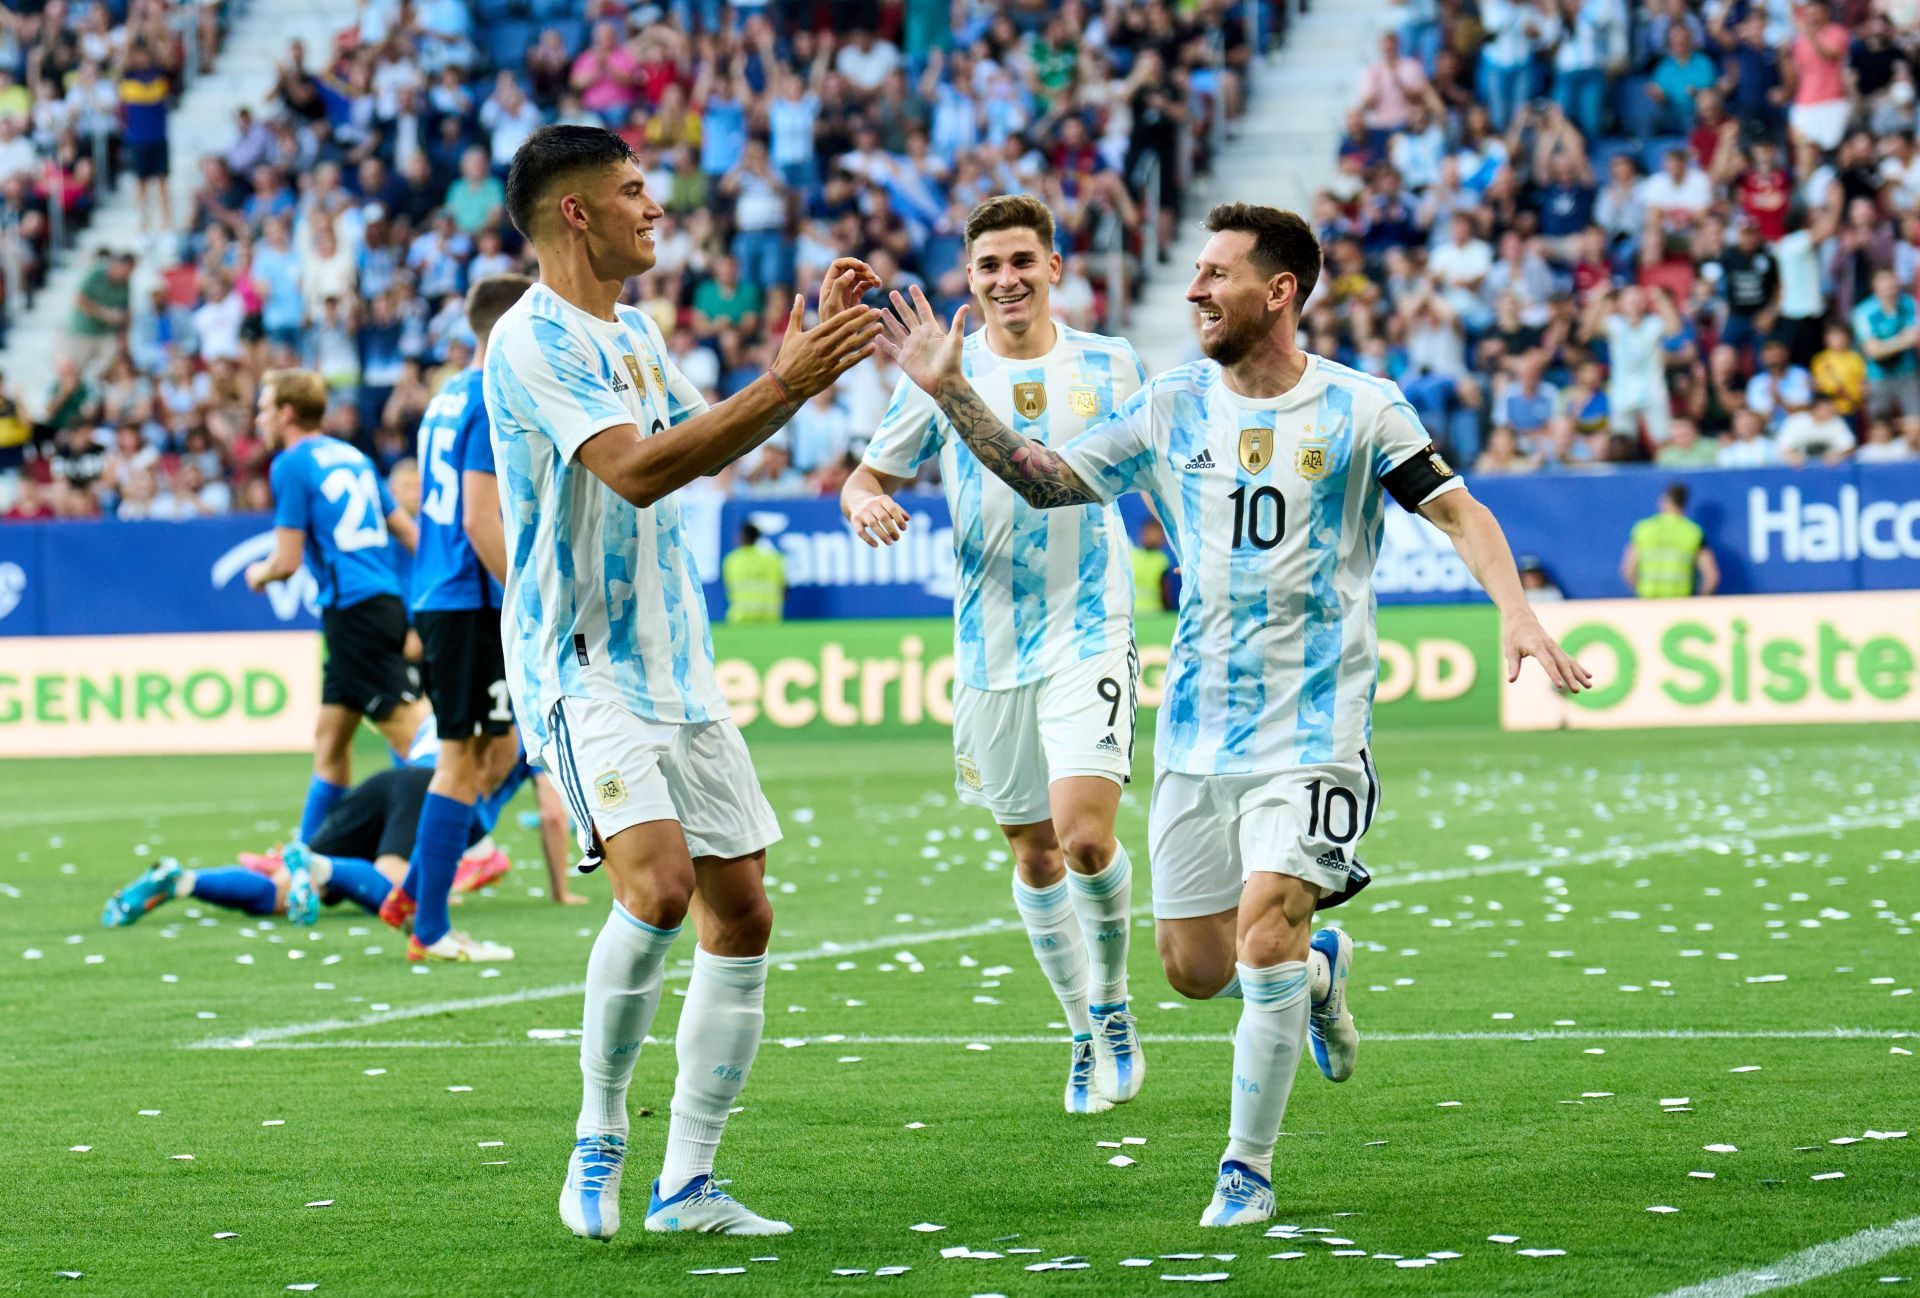 Argentina v Estonia - International Friendly